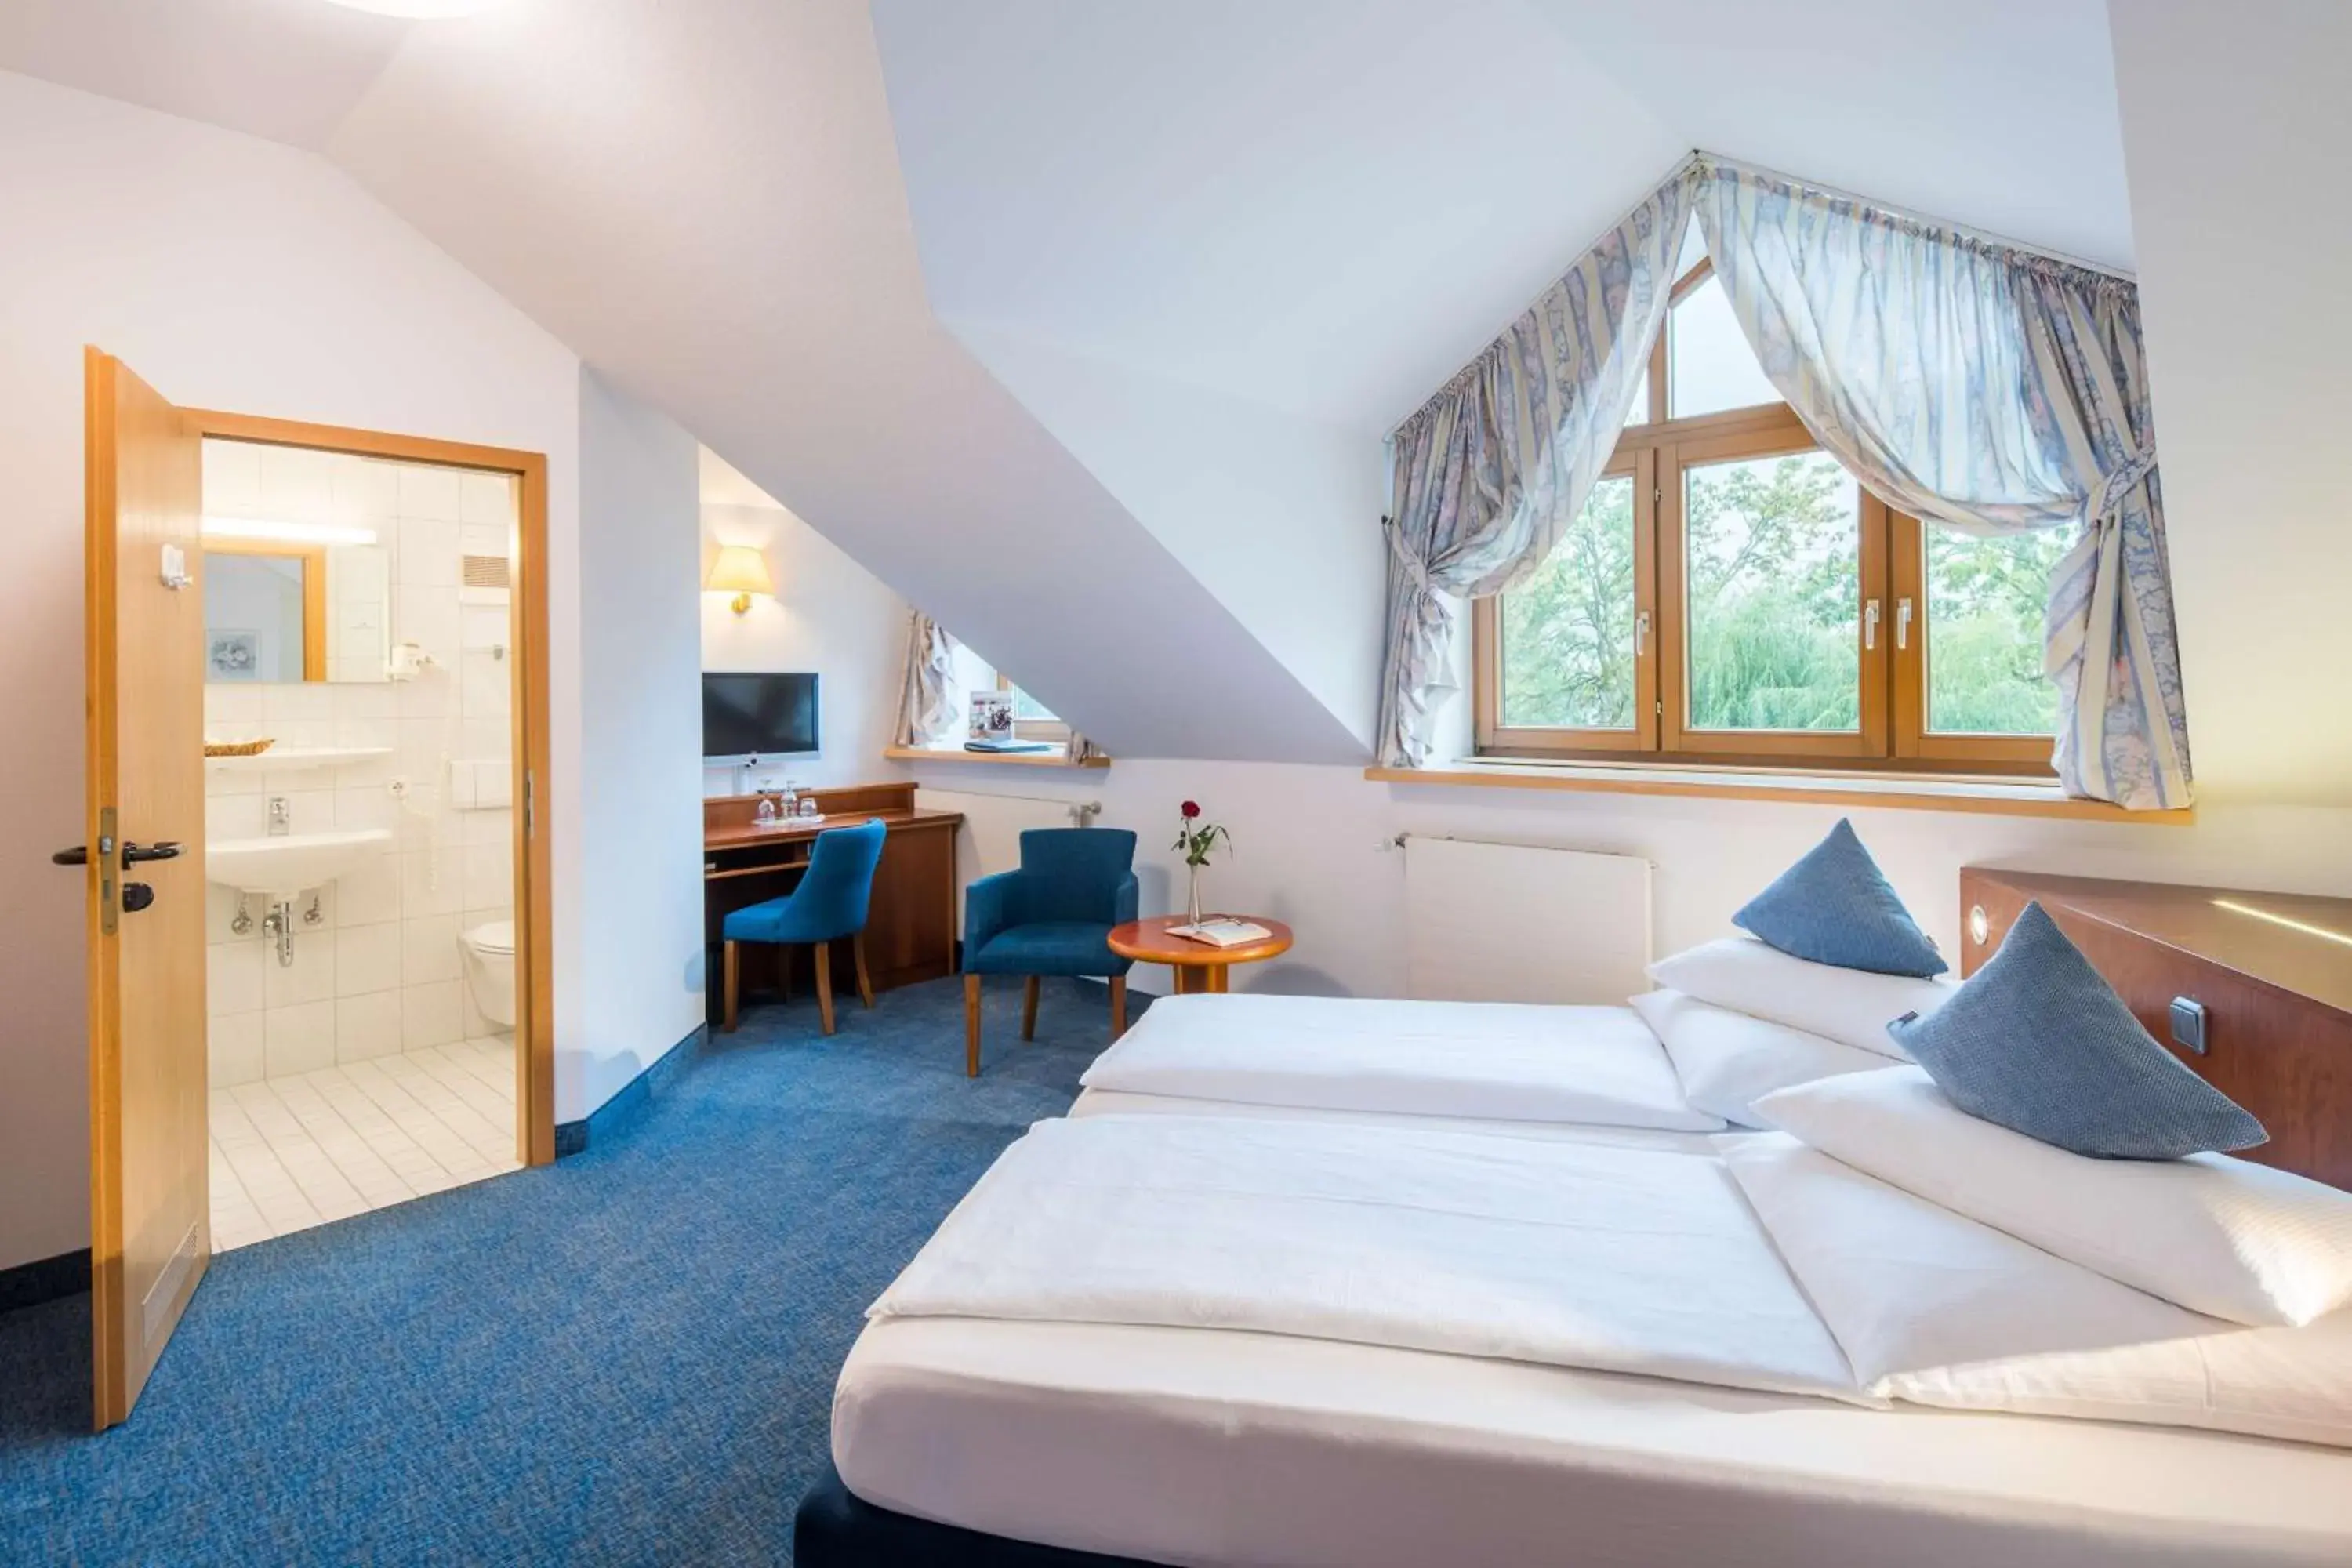 Bedroom, Bed in Best Western Blankenburg Hotel